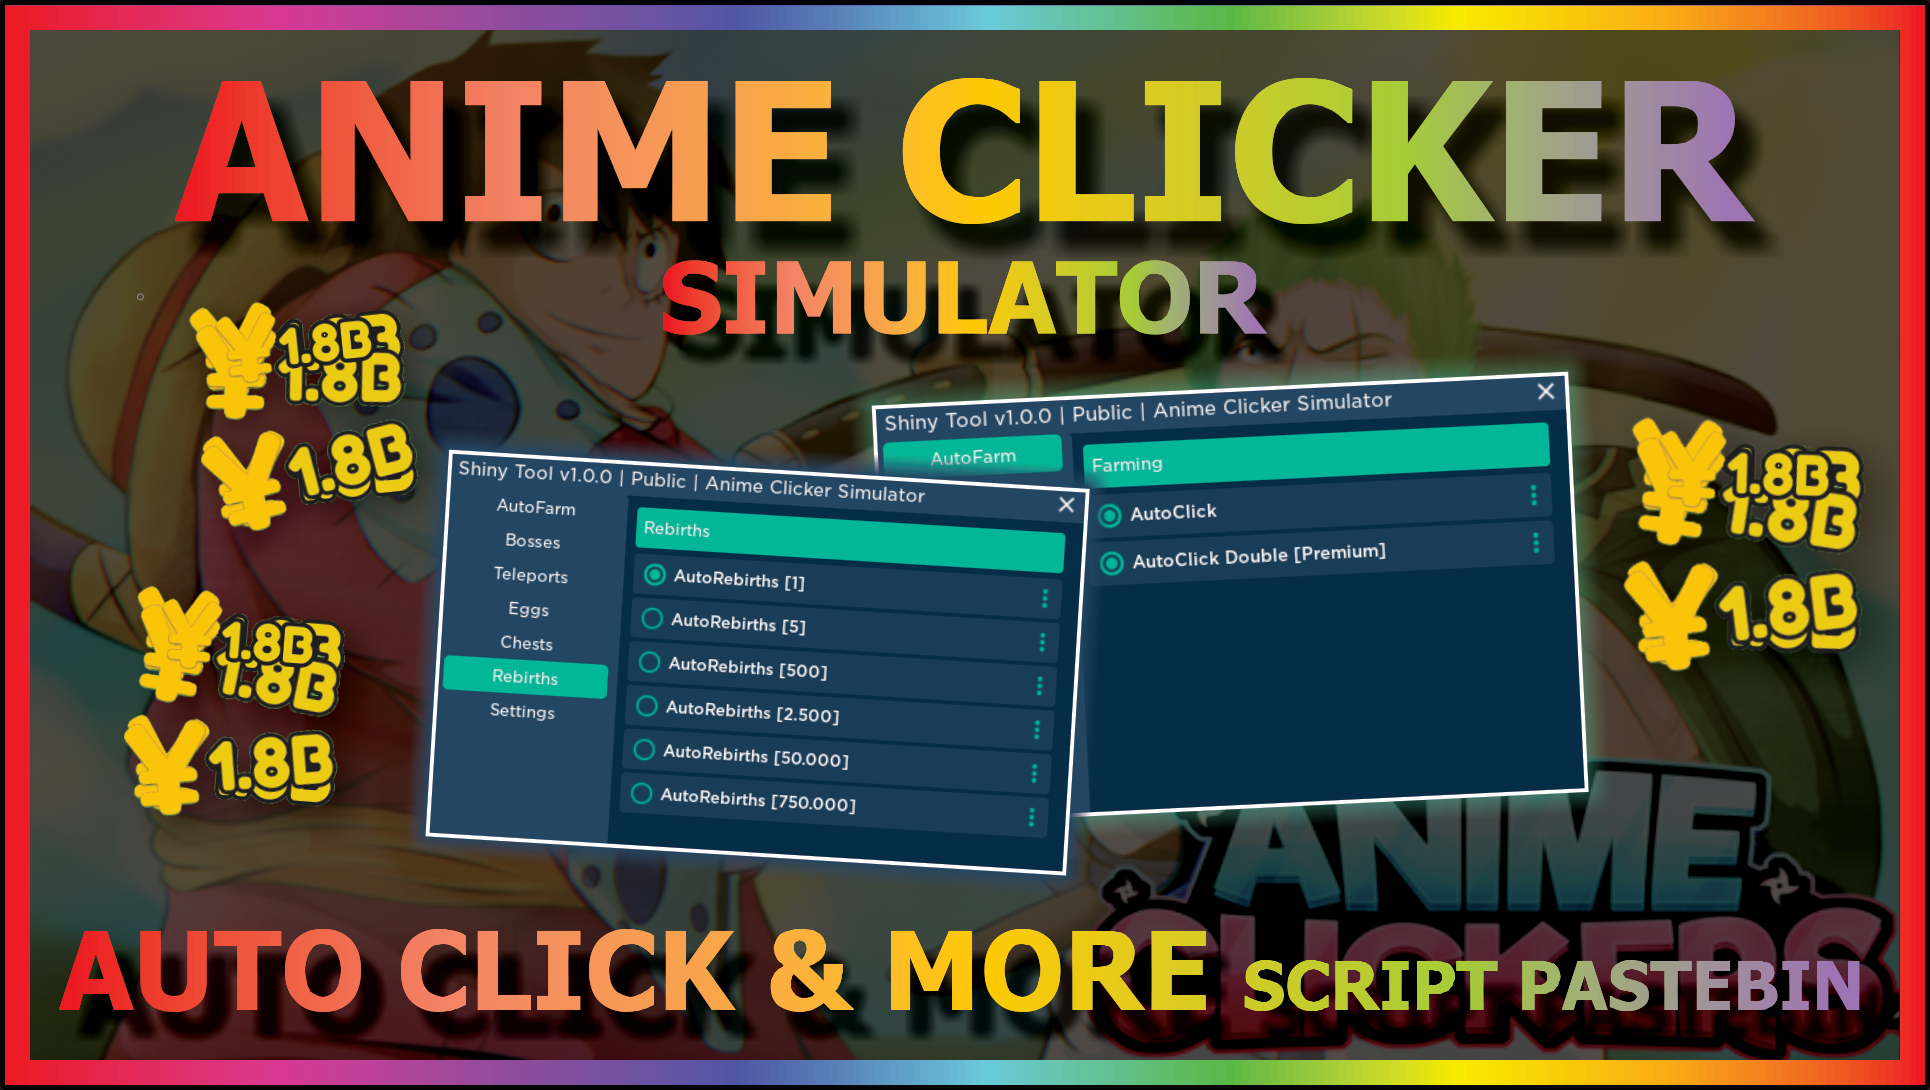 Clicker Simulator Script